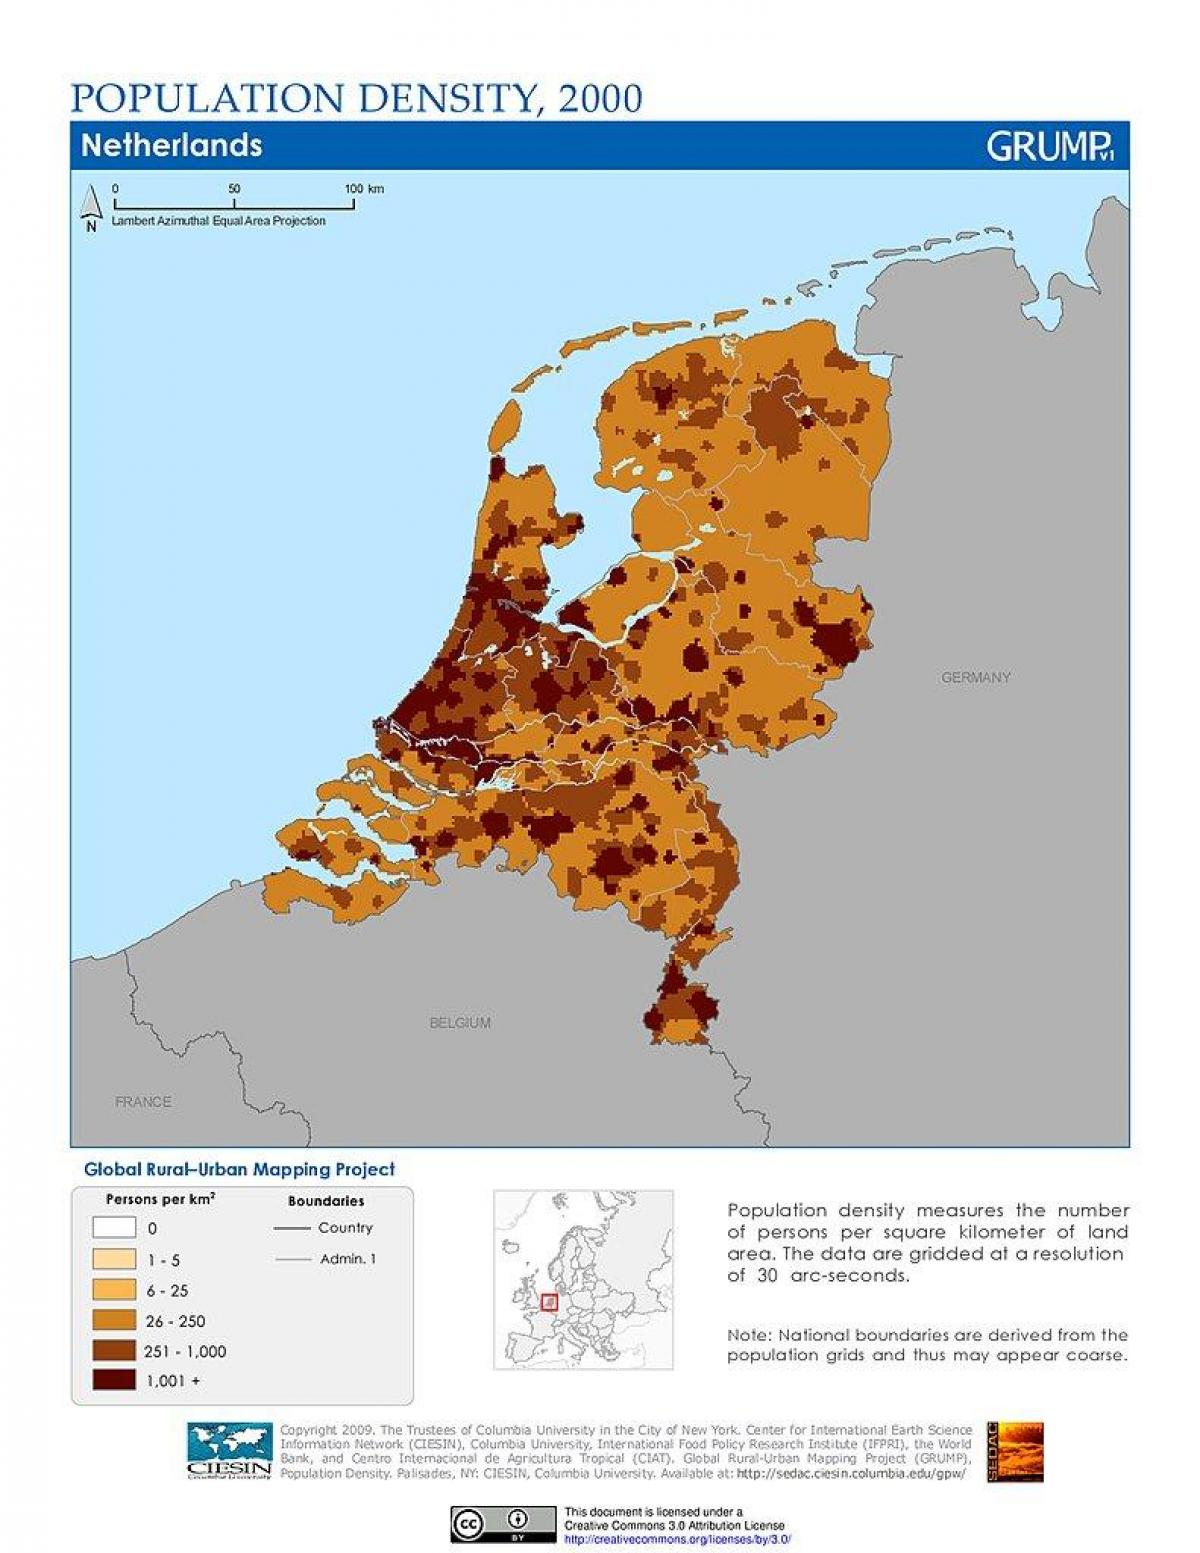 Netherlands population density map